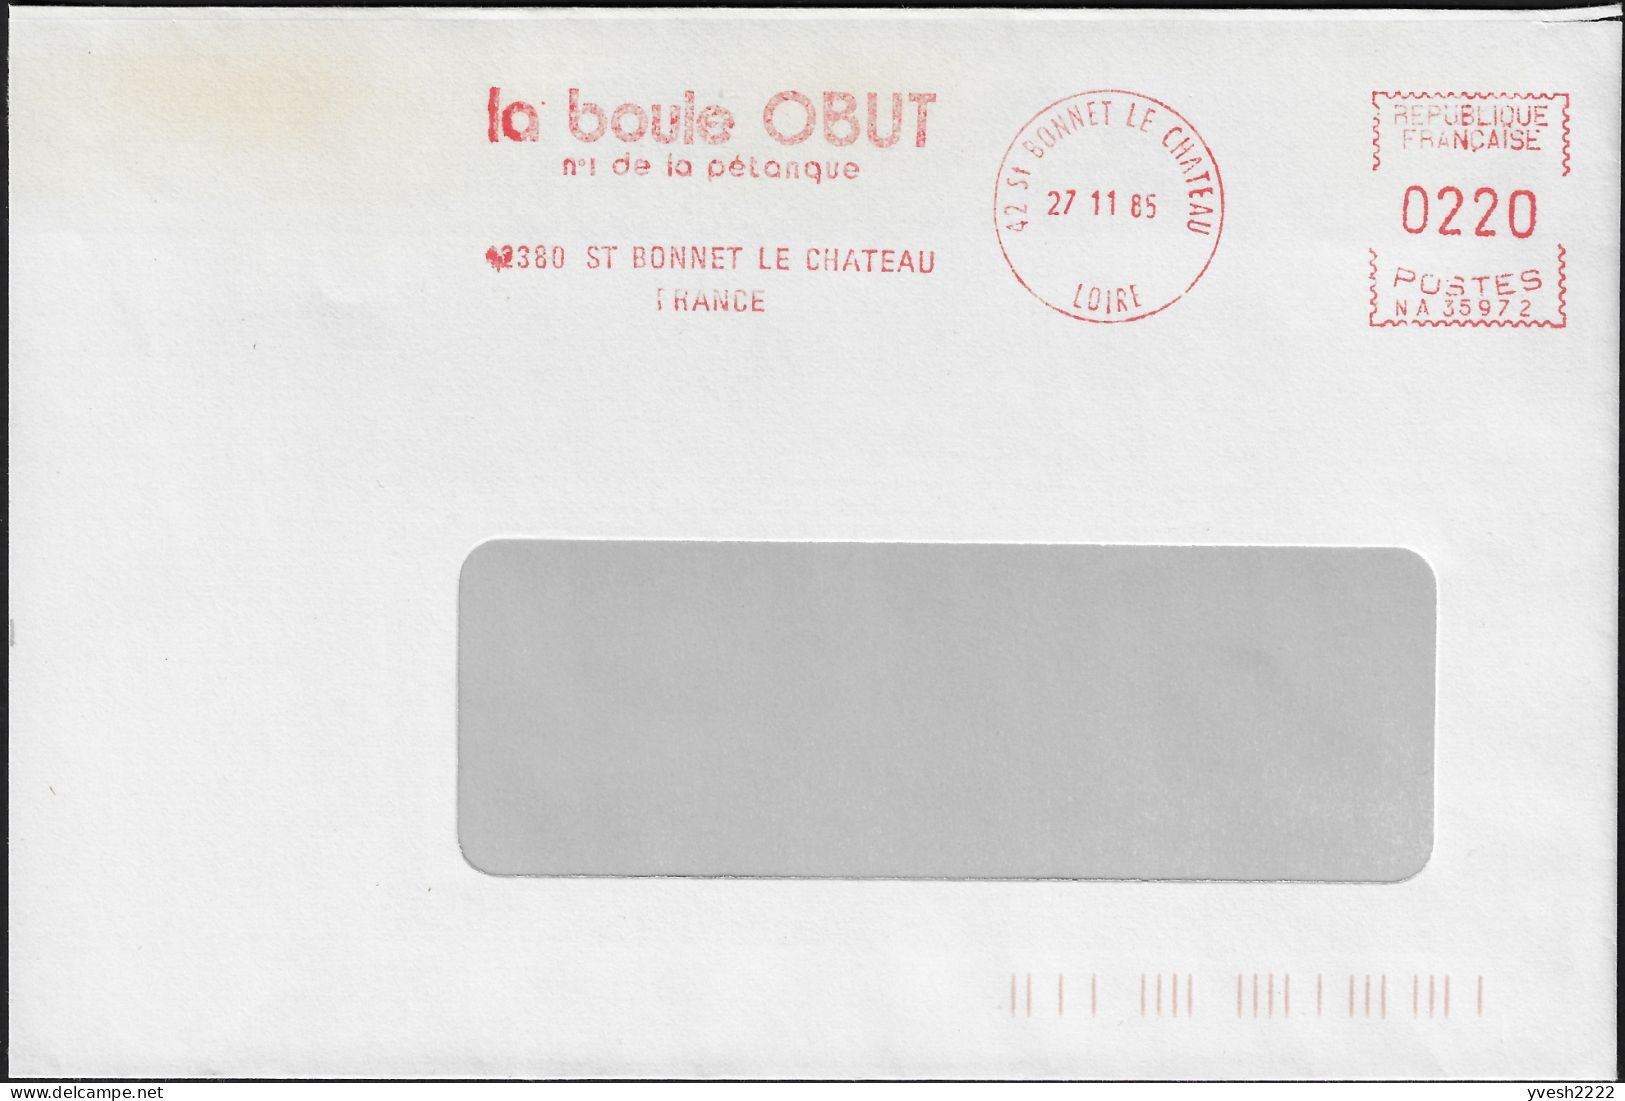 France 1985. Empreinte De Machine à Affranchir Obut. La Boule Obut, N° 1 De La Pétanque - Bowls